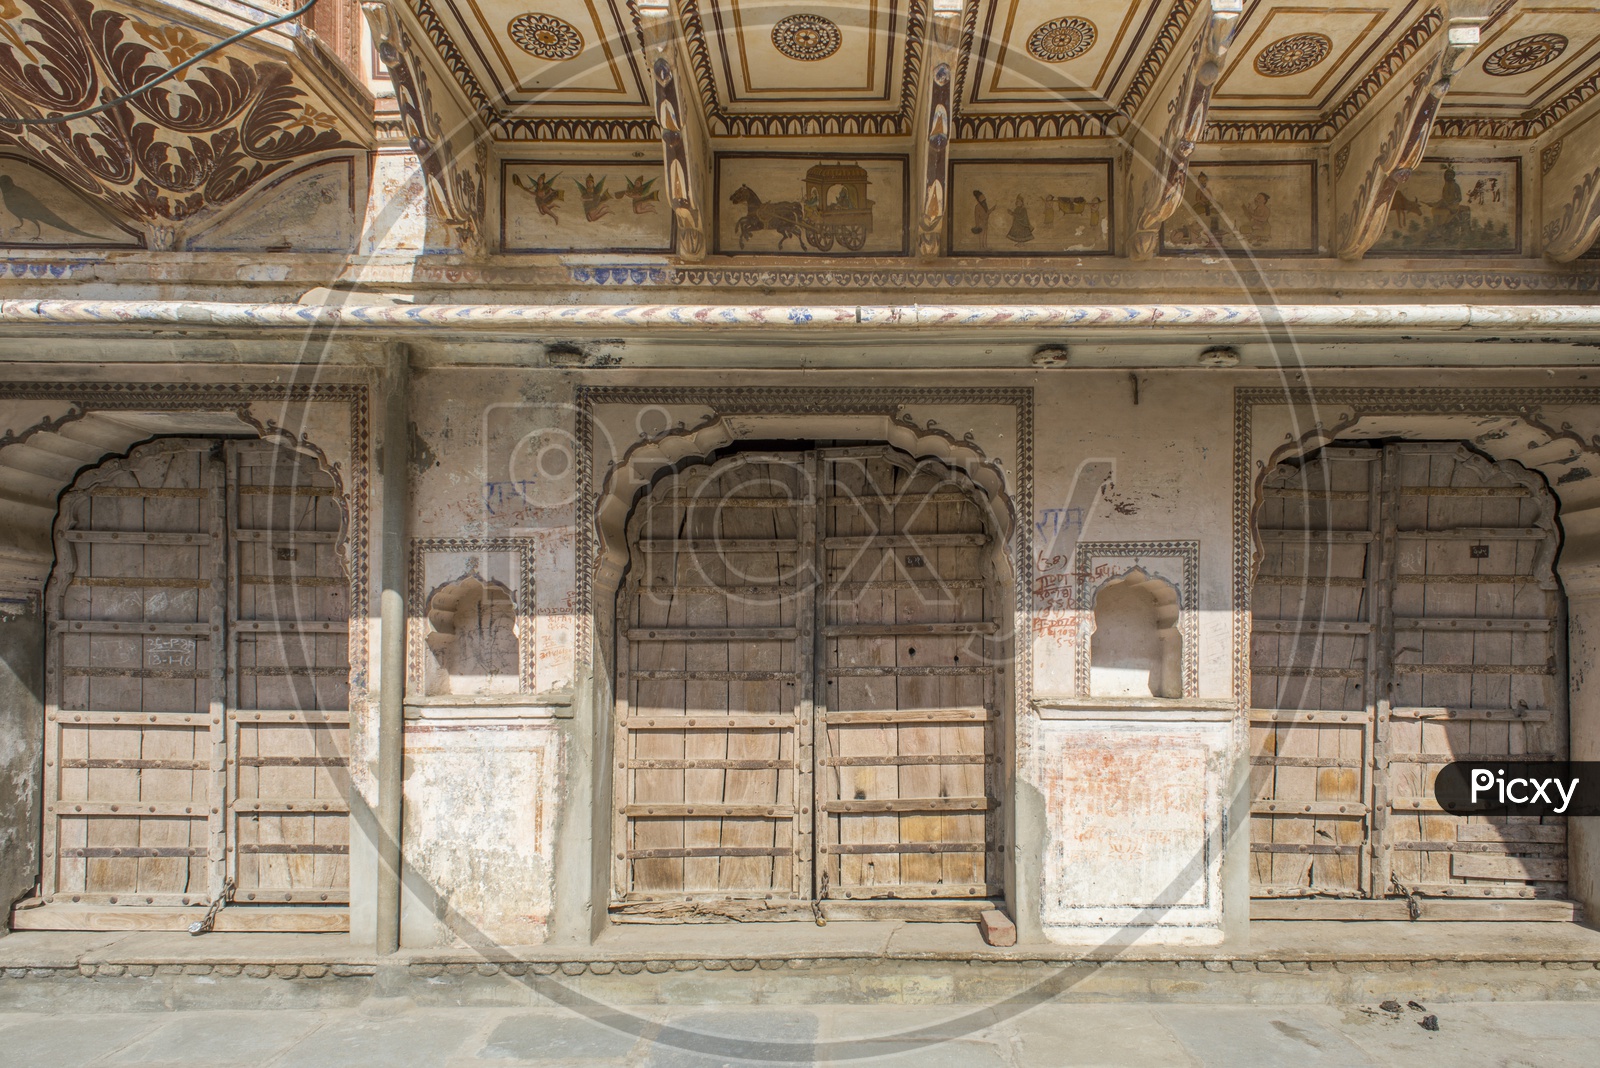 Old Building in Pushkar